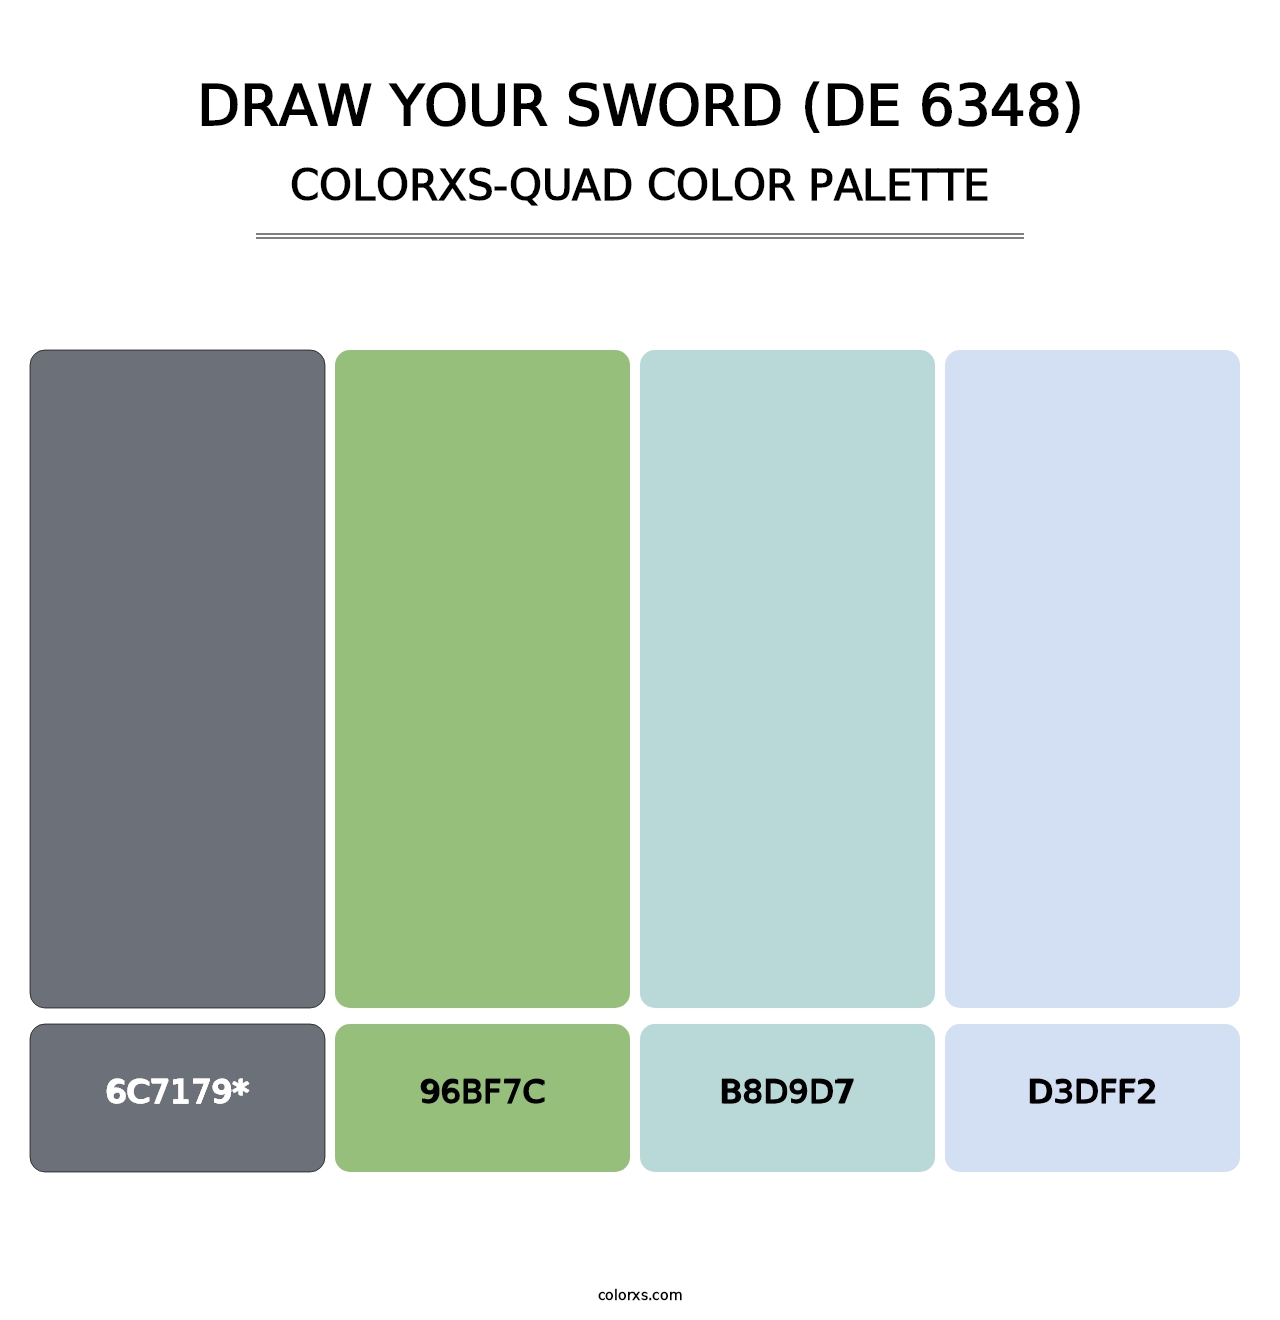 Draw Your Sword (DE 6348) - Colorxs Quad Palette